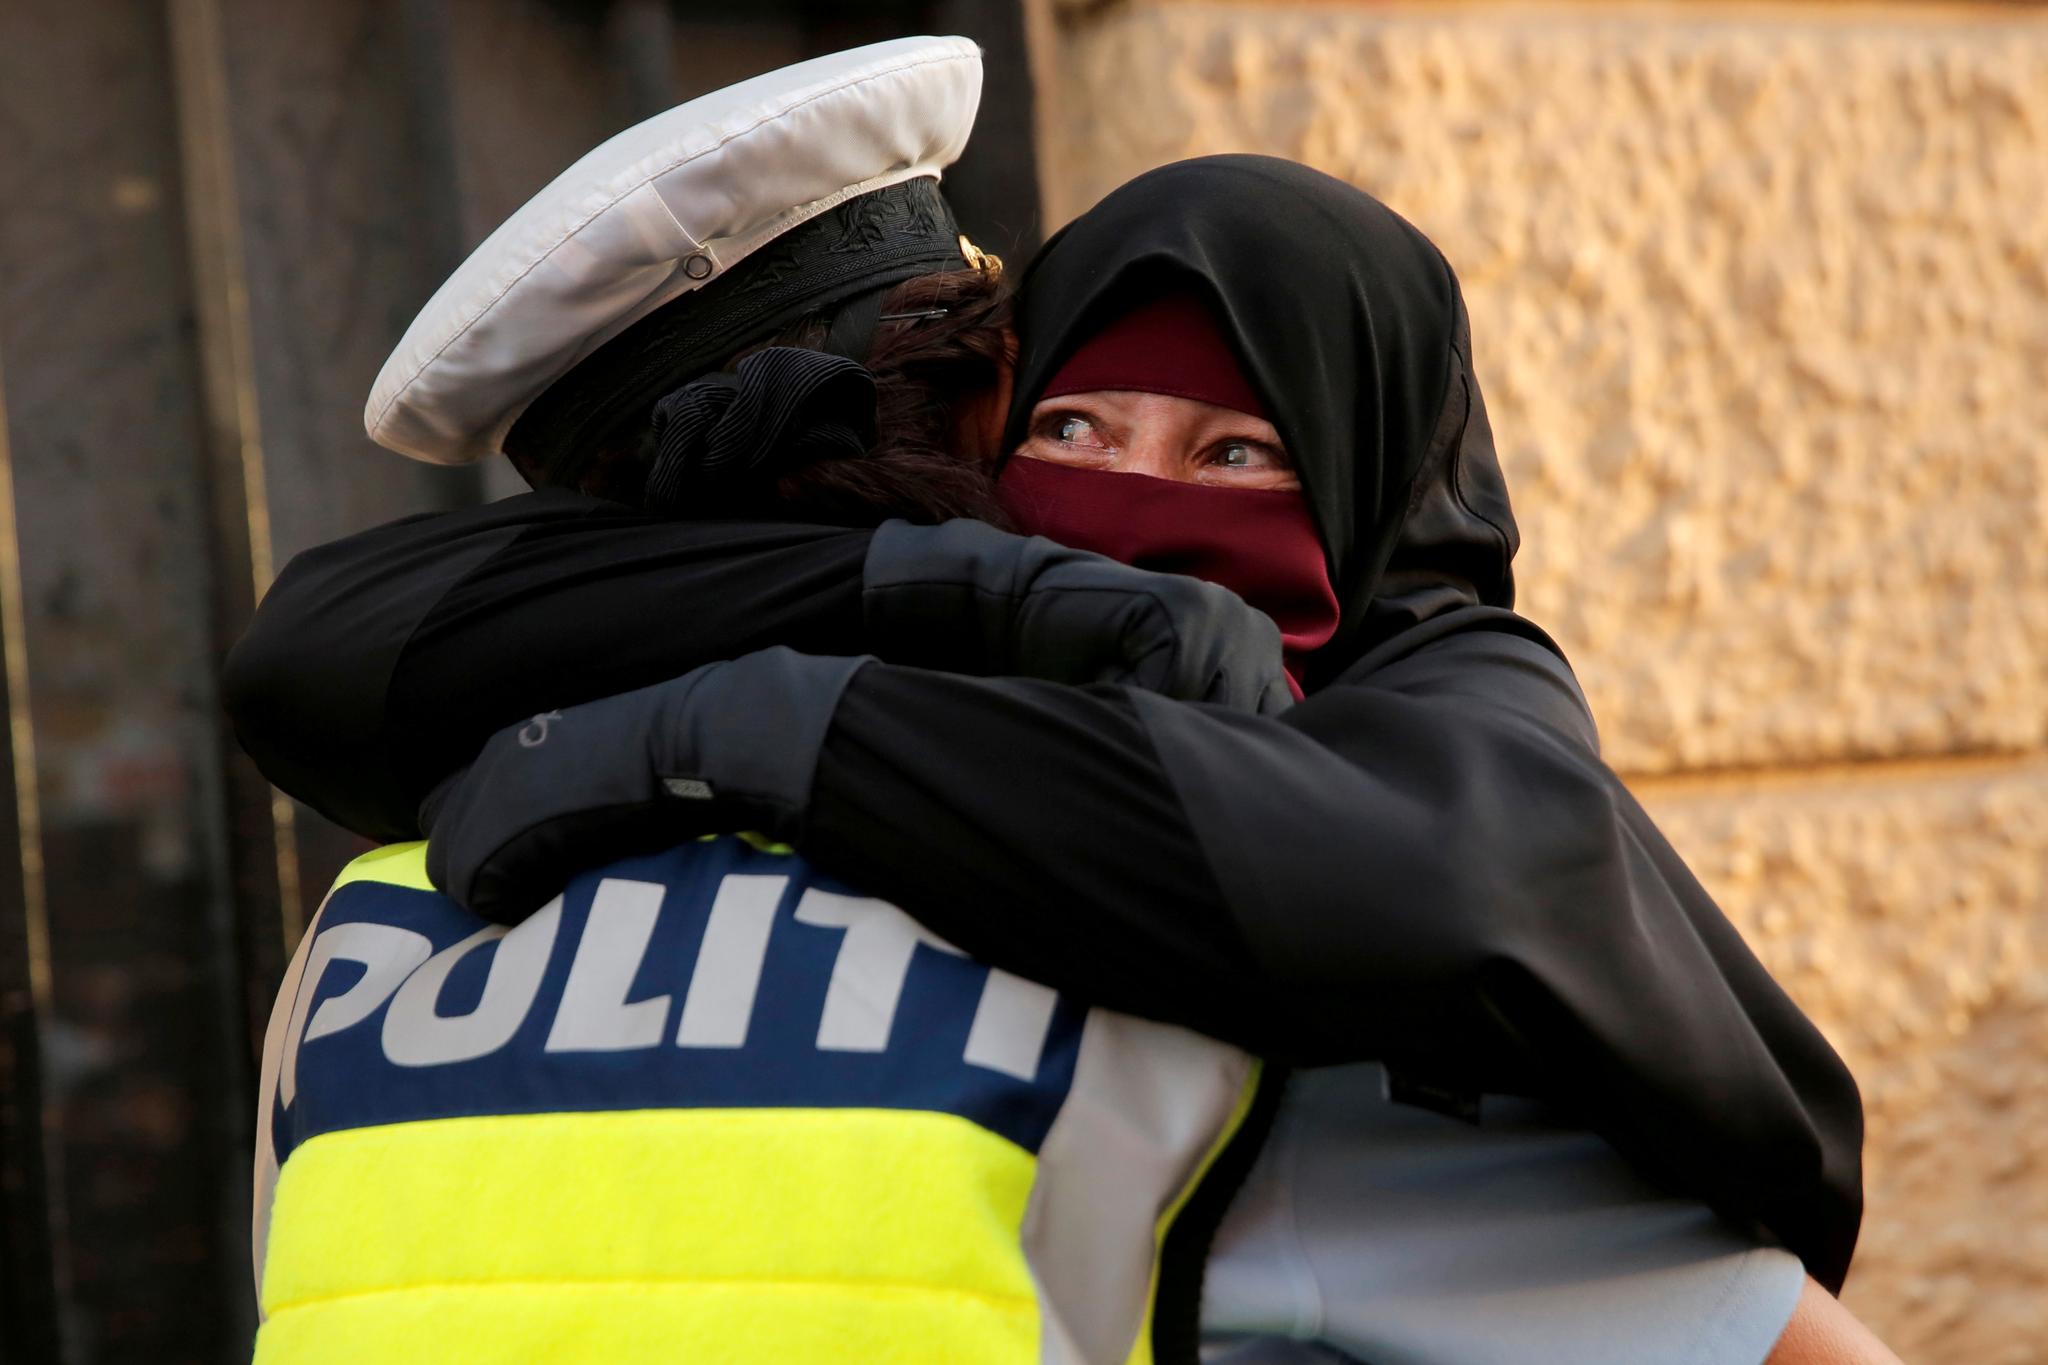 En politidame omfavner en kvinne i nikab under en demonstrasjon mot det danske forbudet mot nikab, burka og andre plagg som tildekker ansiktet.